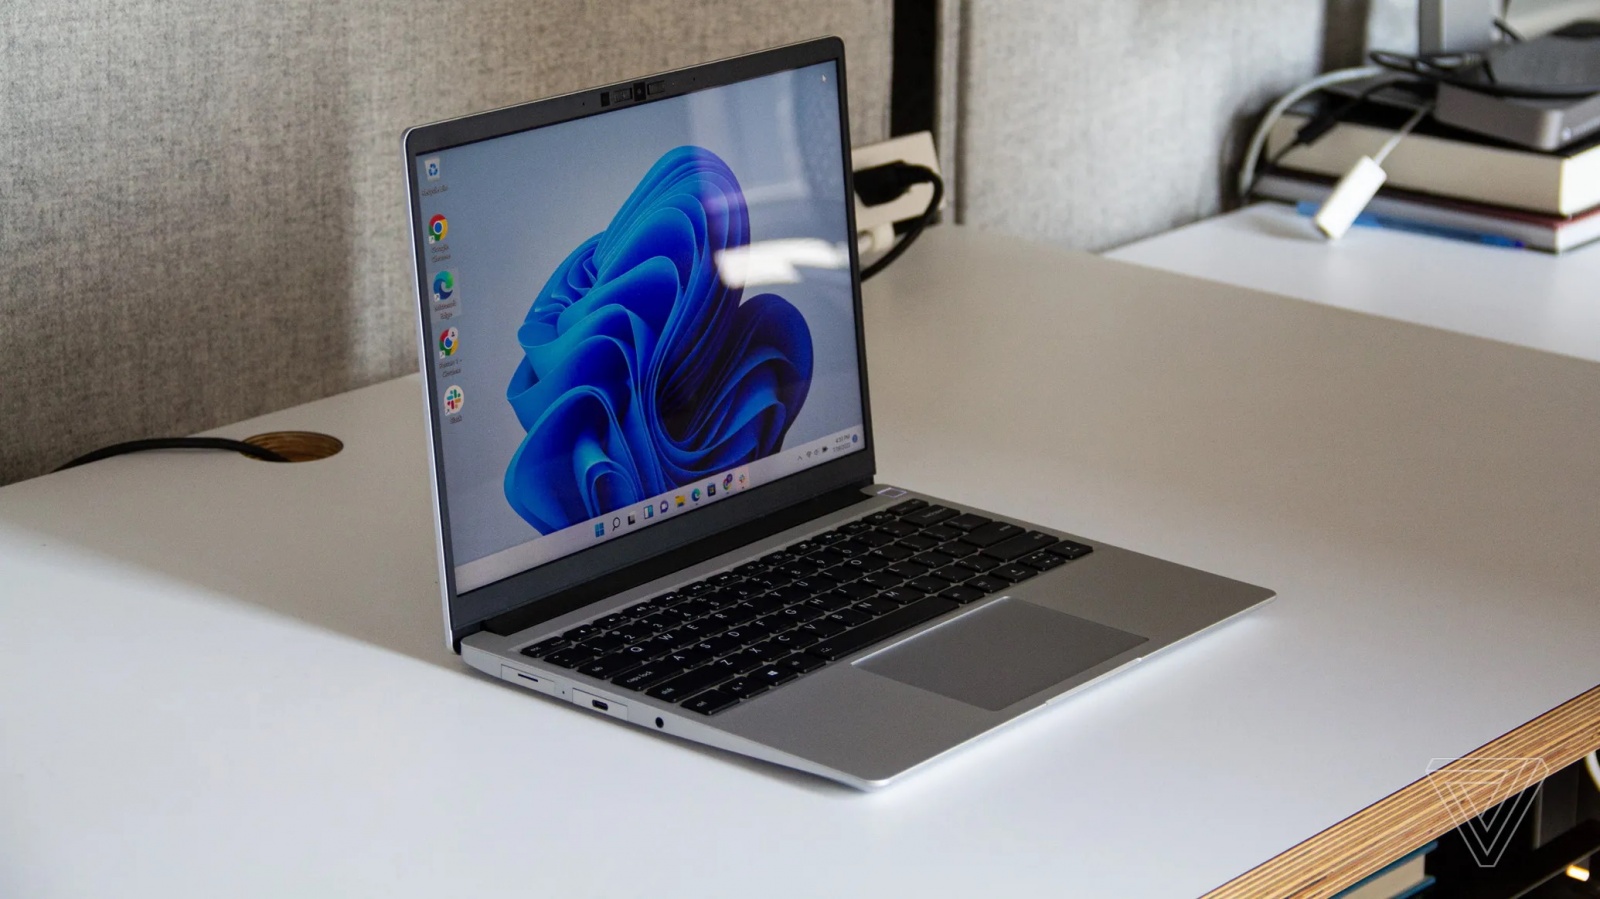 Модульные устройства последнего времени: обновленный Framework laptop, планшет из него же и новичок PrimeBook Circular - 2